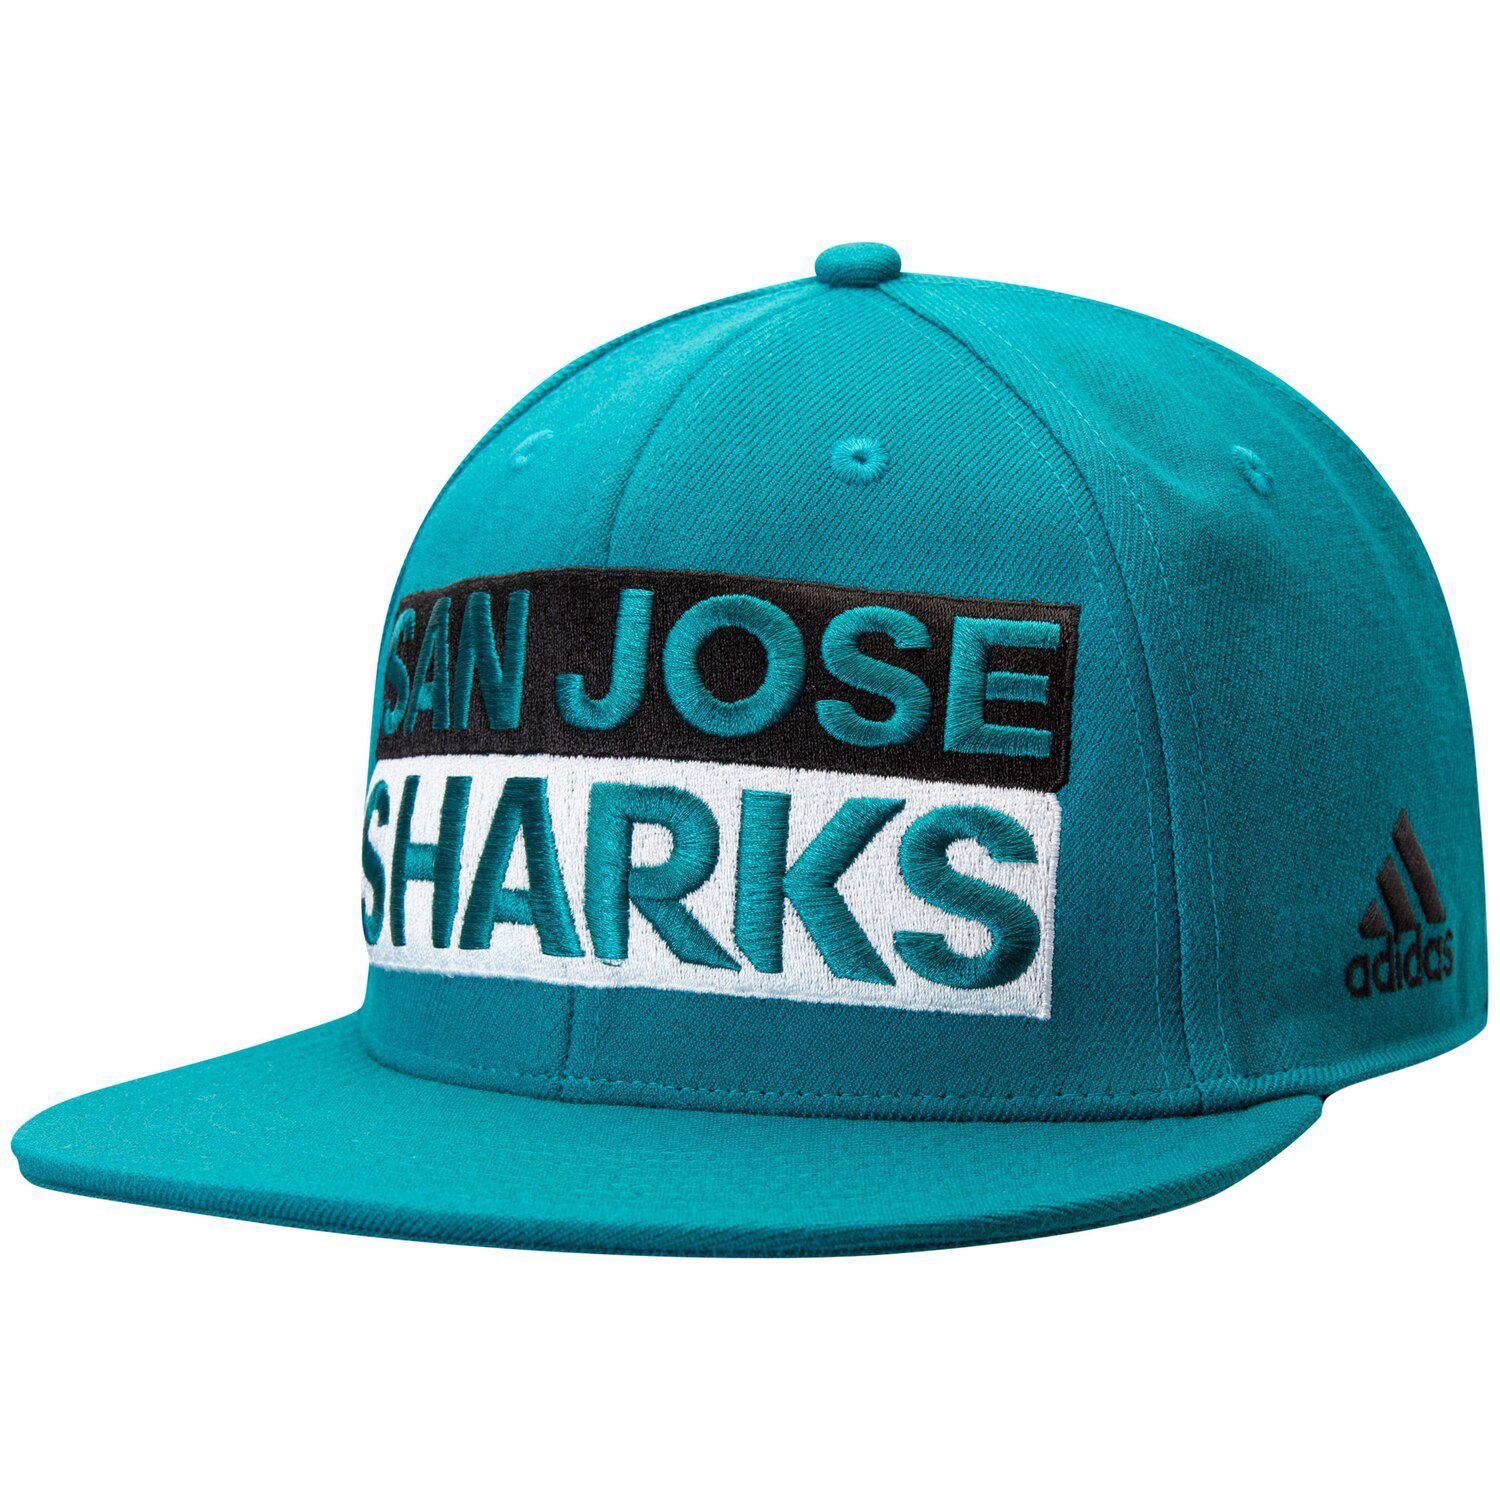 san jose sharks adidas hat